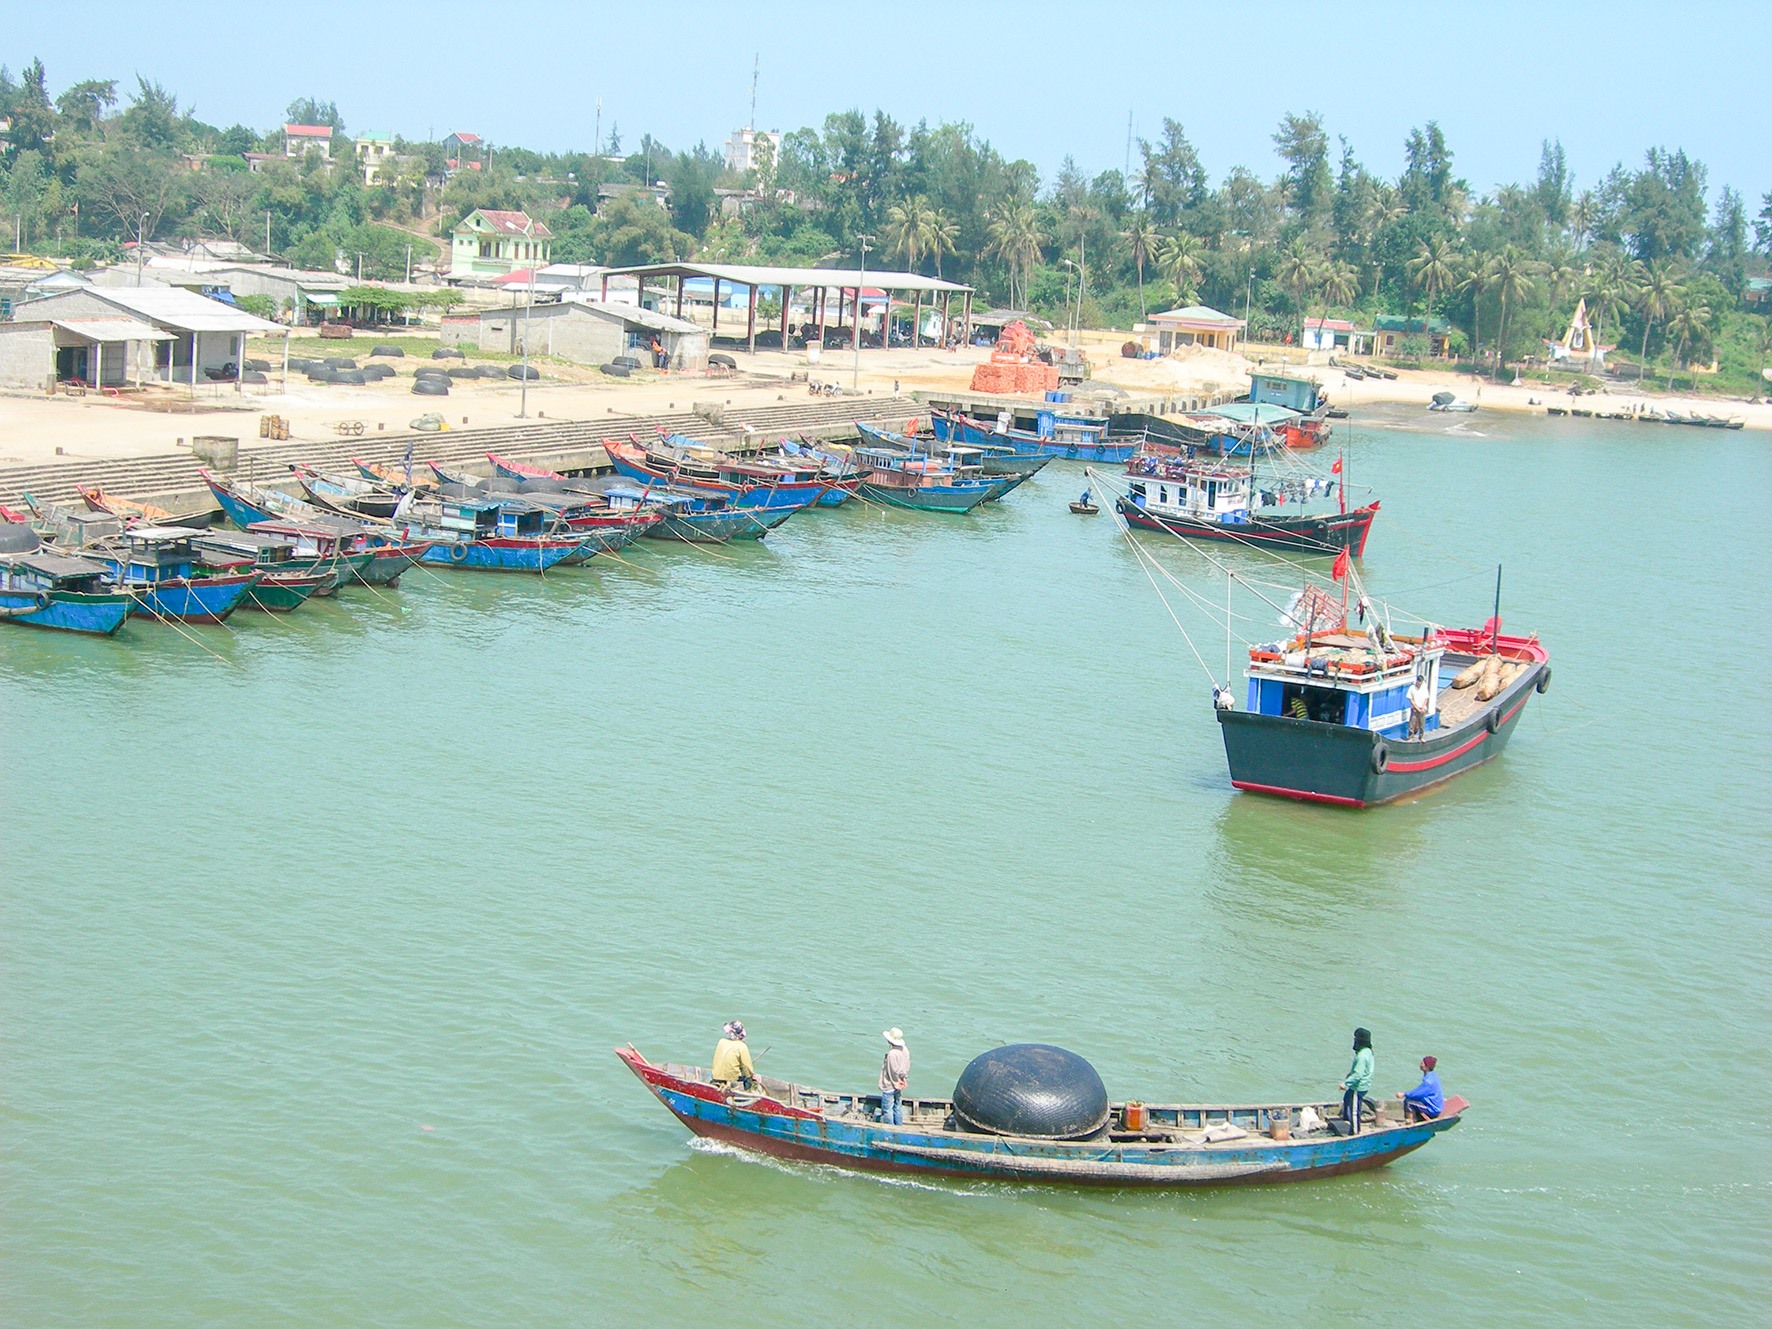 Các tàu thuyền vào neo đậu tránh ATNĐ tại khu neo đậu tránh trú bão Cửa Tùng, huyện Vĩnh Linh - Ảnh: T.T